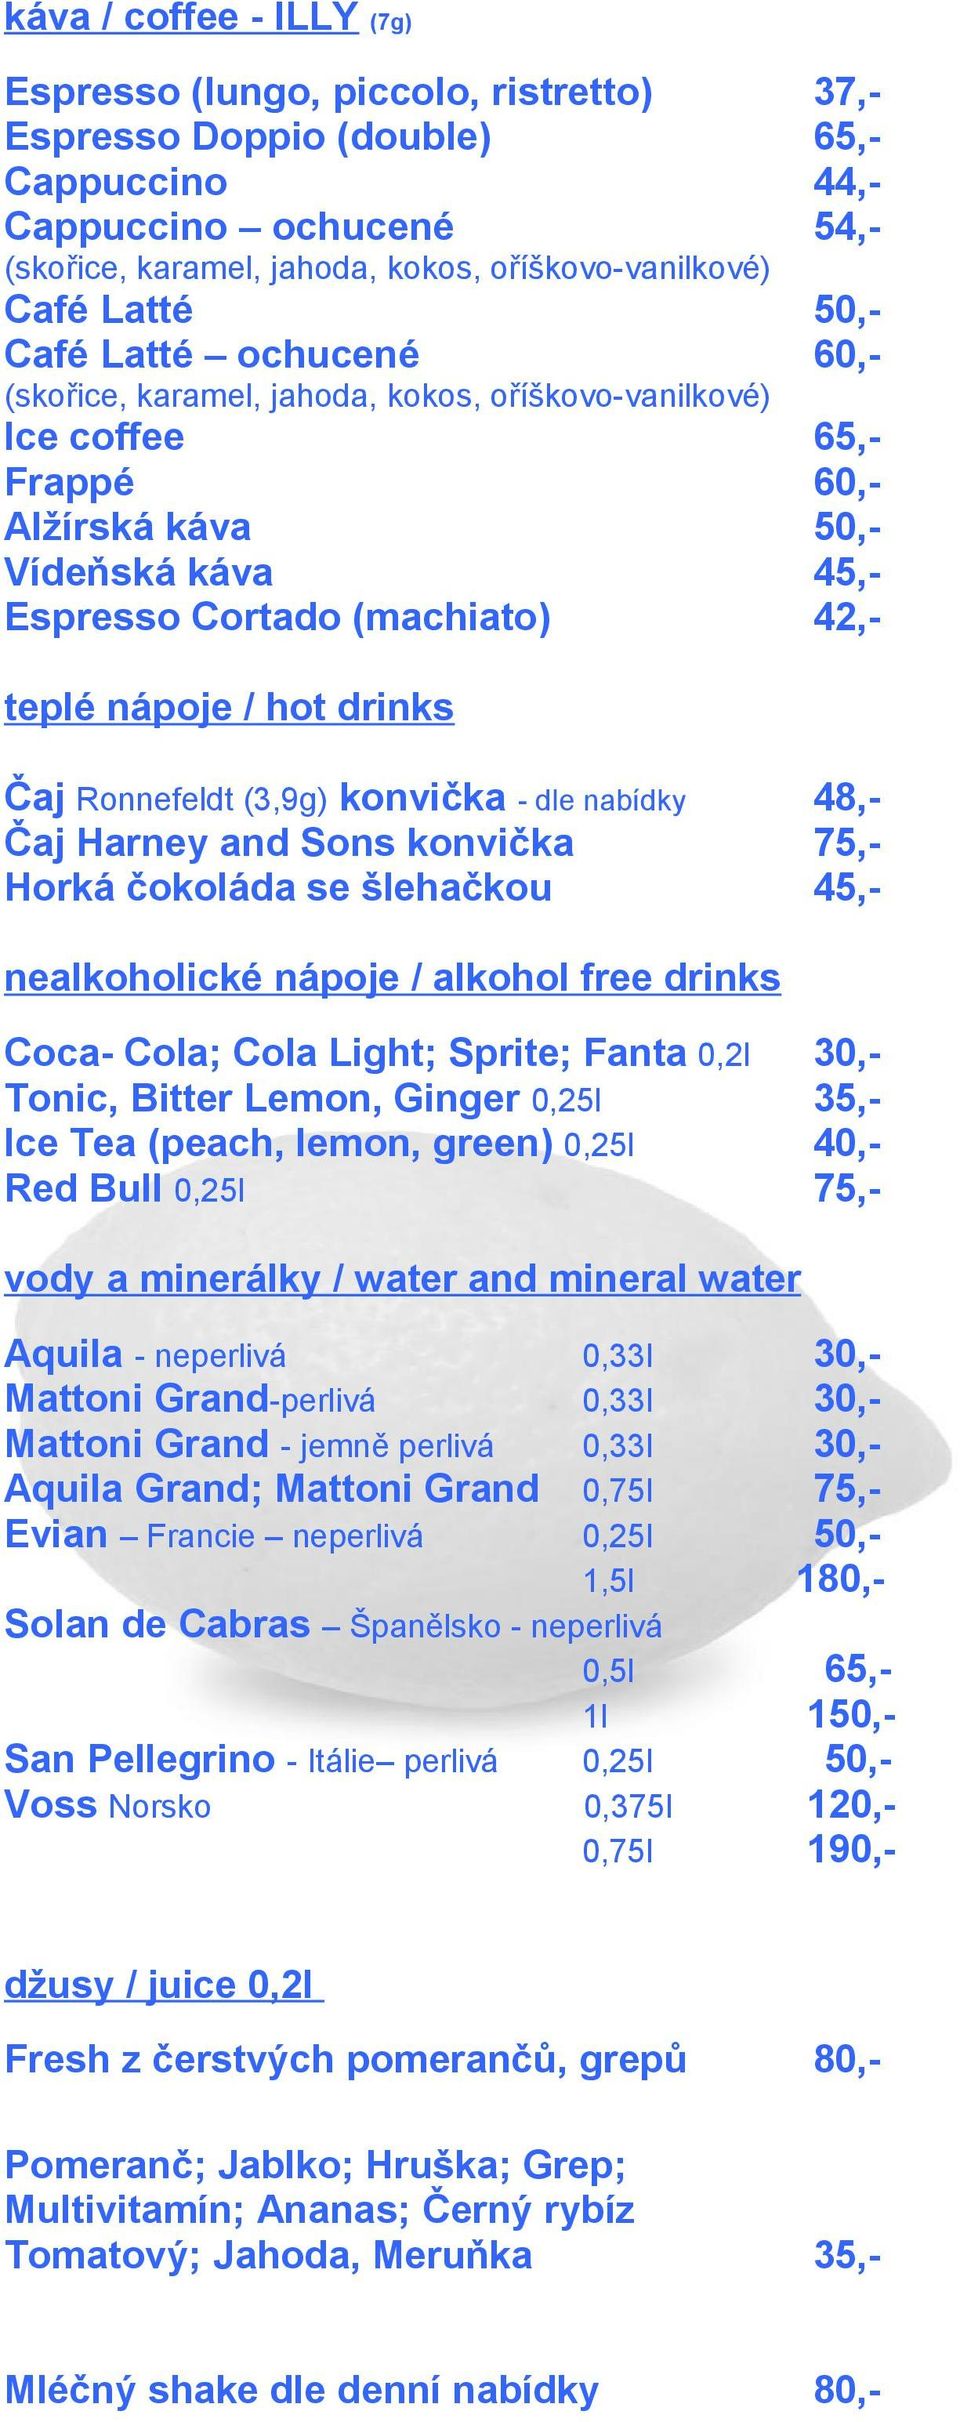 nápoje / hot drinks Čaj Ronnefeldt (3,9g) konvička - dle nabídky 48,- Čaj Harney and Sons konvička 75,- Horká čokoláda se šlehačkou 45,- nealkoholické nápoje / alkohol free drinks Coca- Cola; Cola